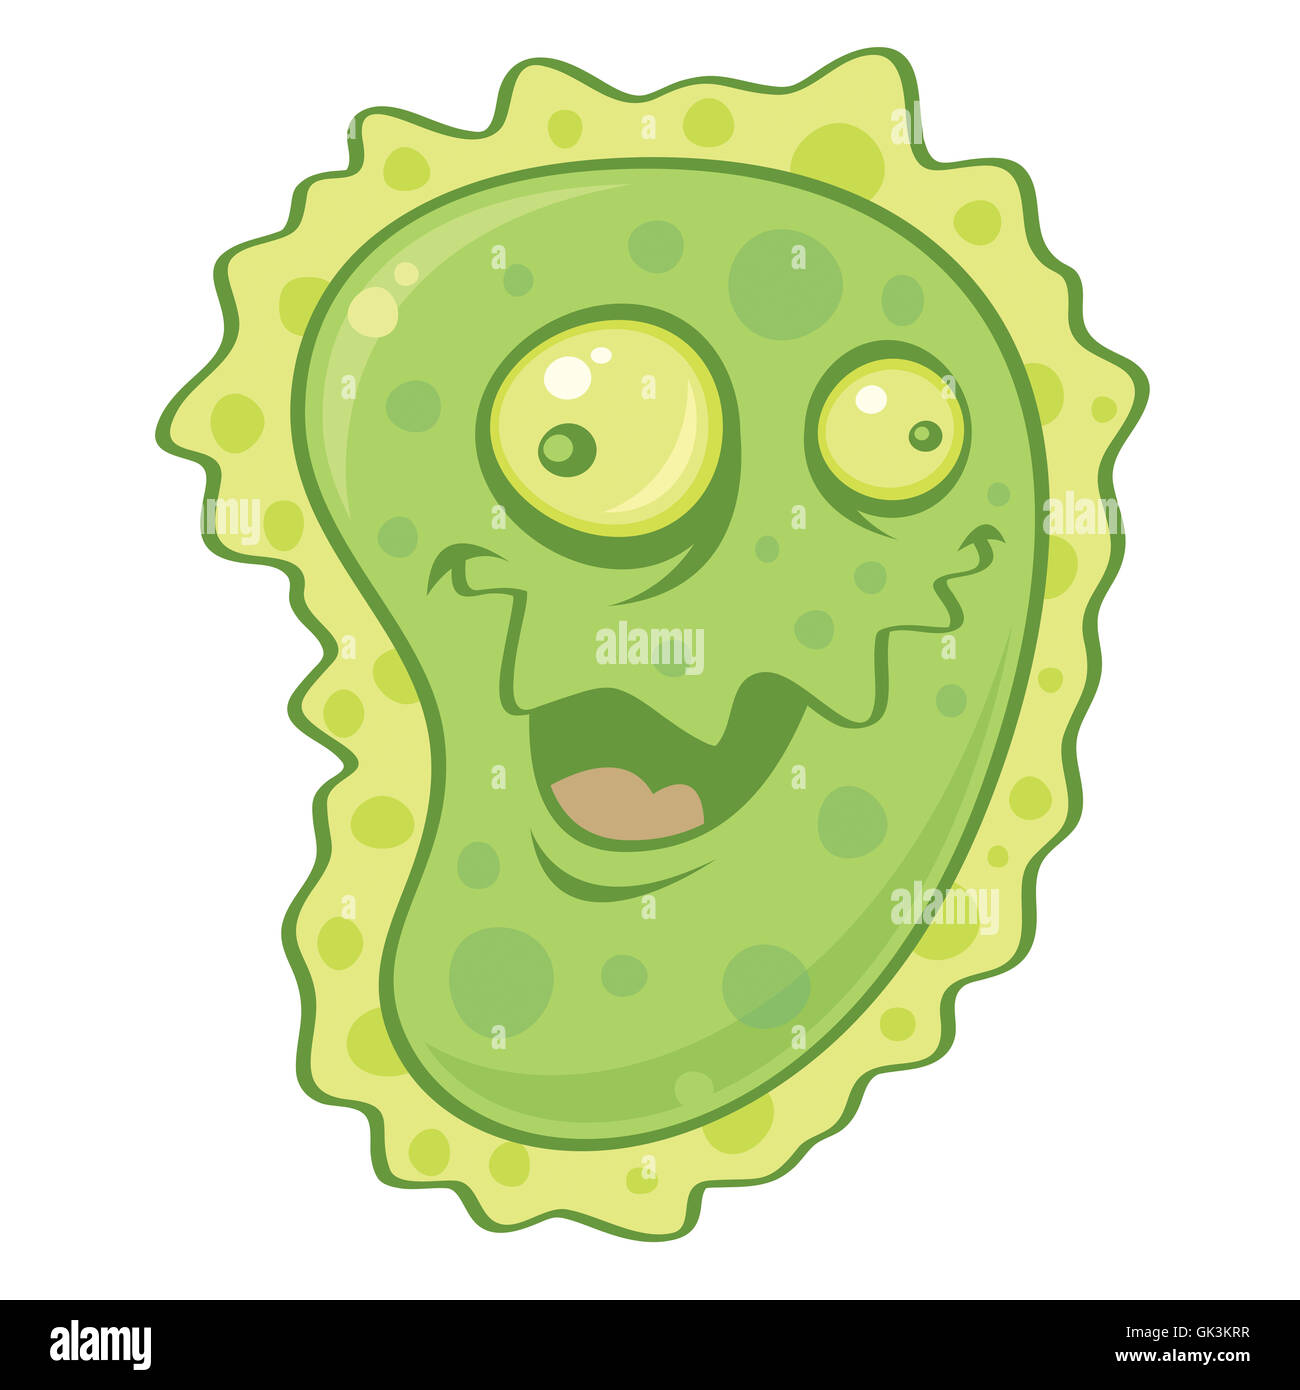 gripe del virus germen Foto de stock